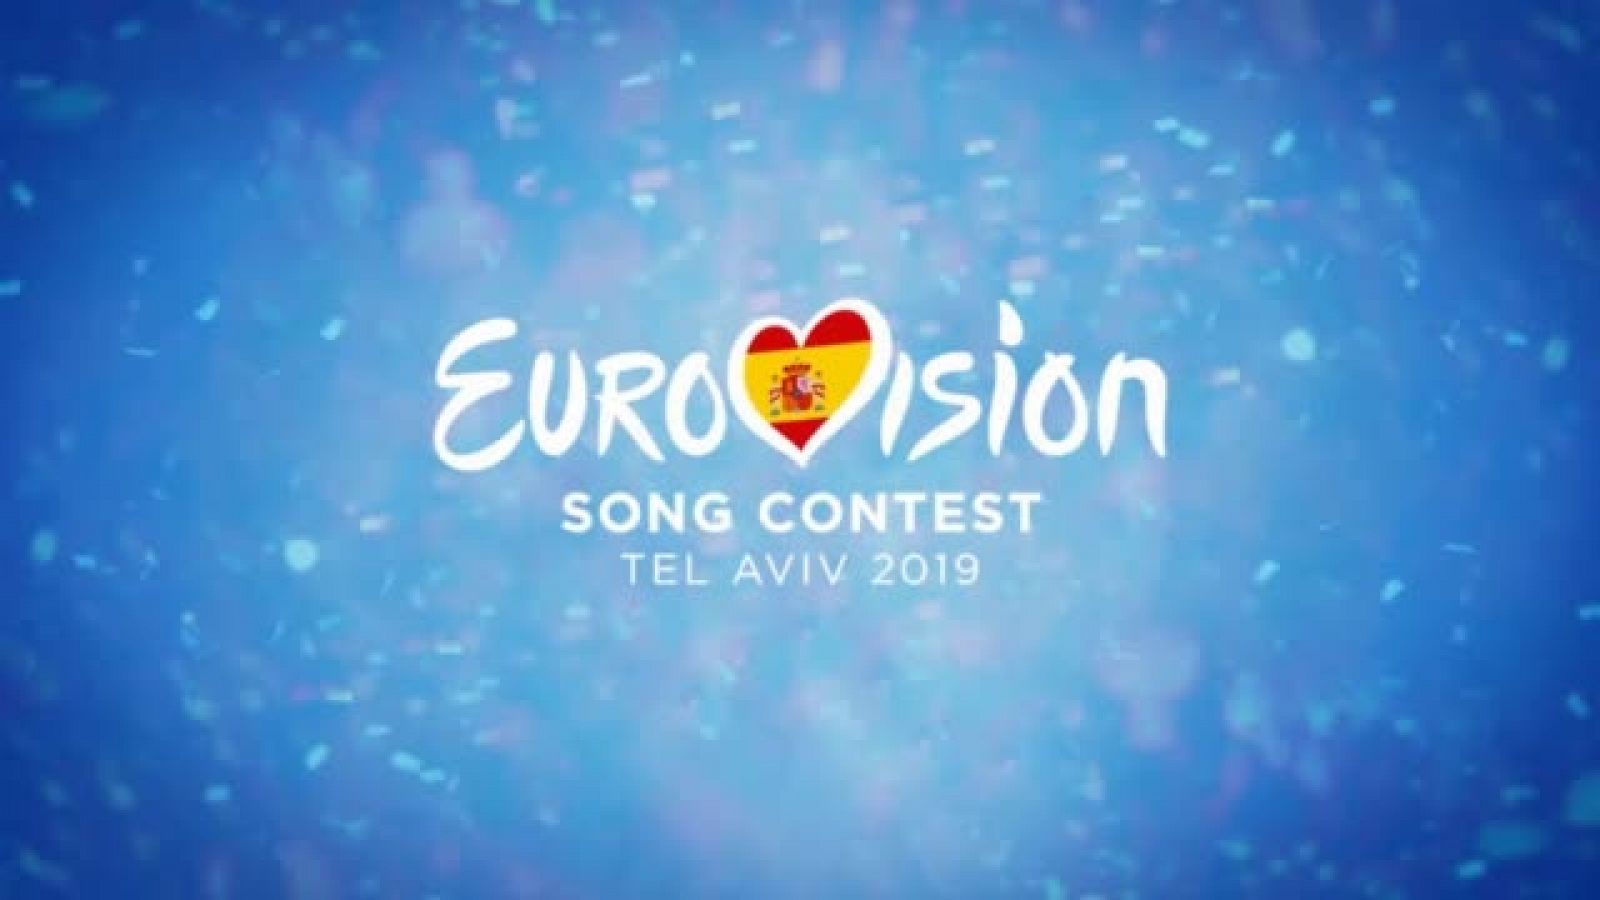 Eurovisión 2019: Así ha sido la alfombra naranja de la Welcome party